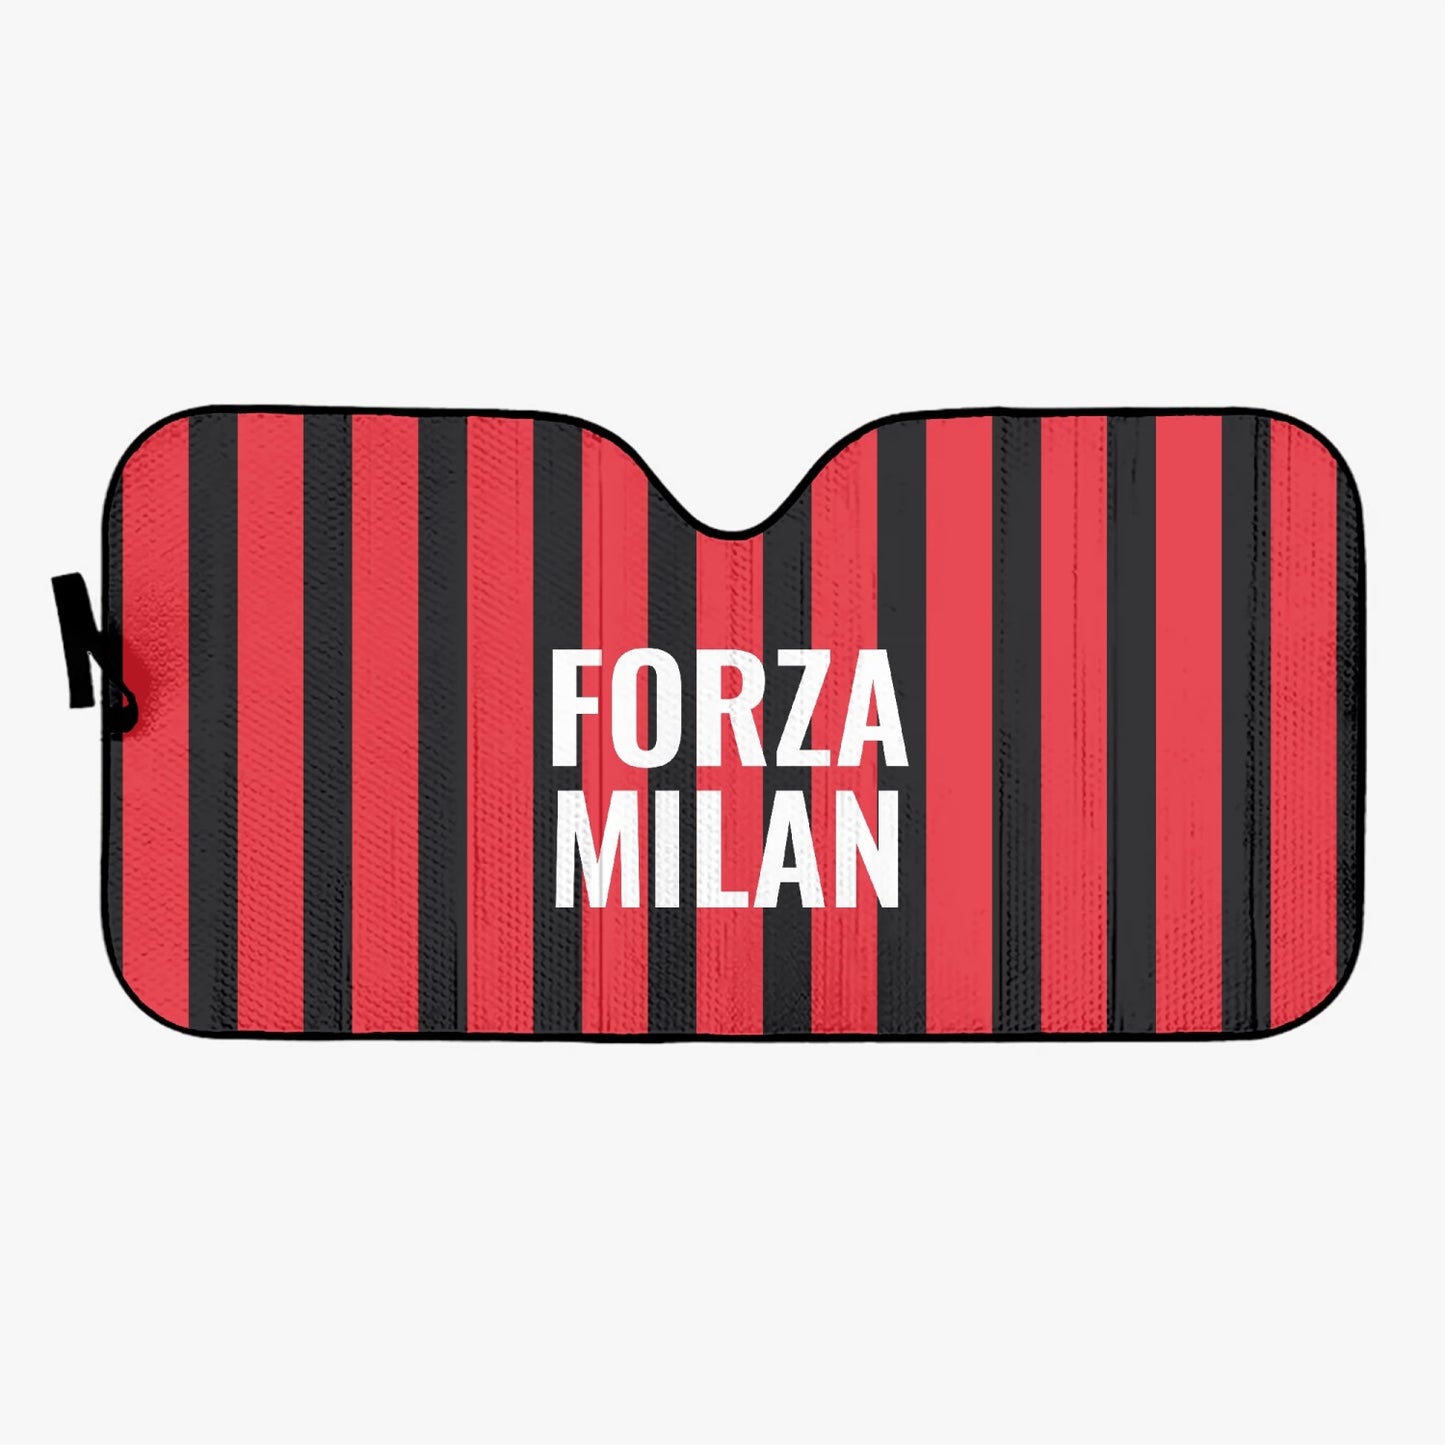 Forza Milan - Car Sun Shade